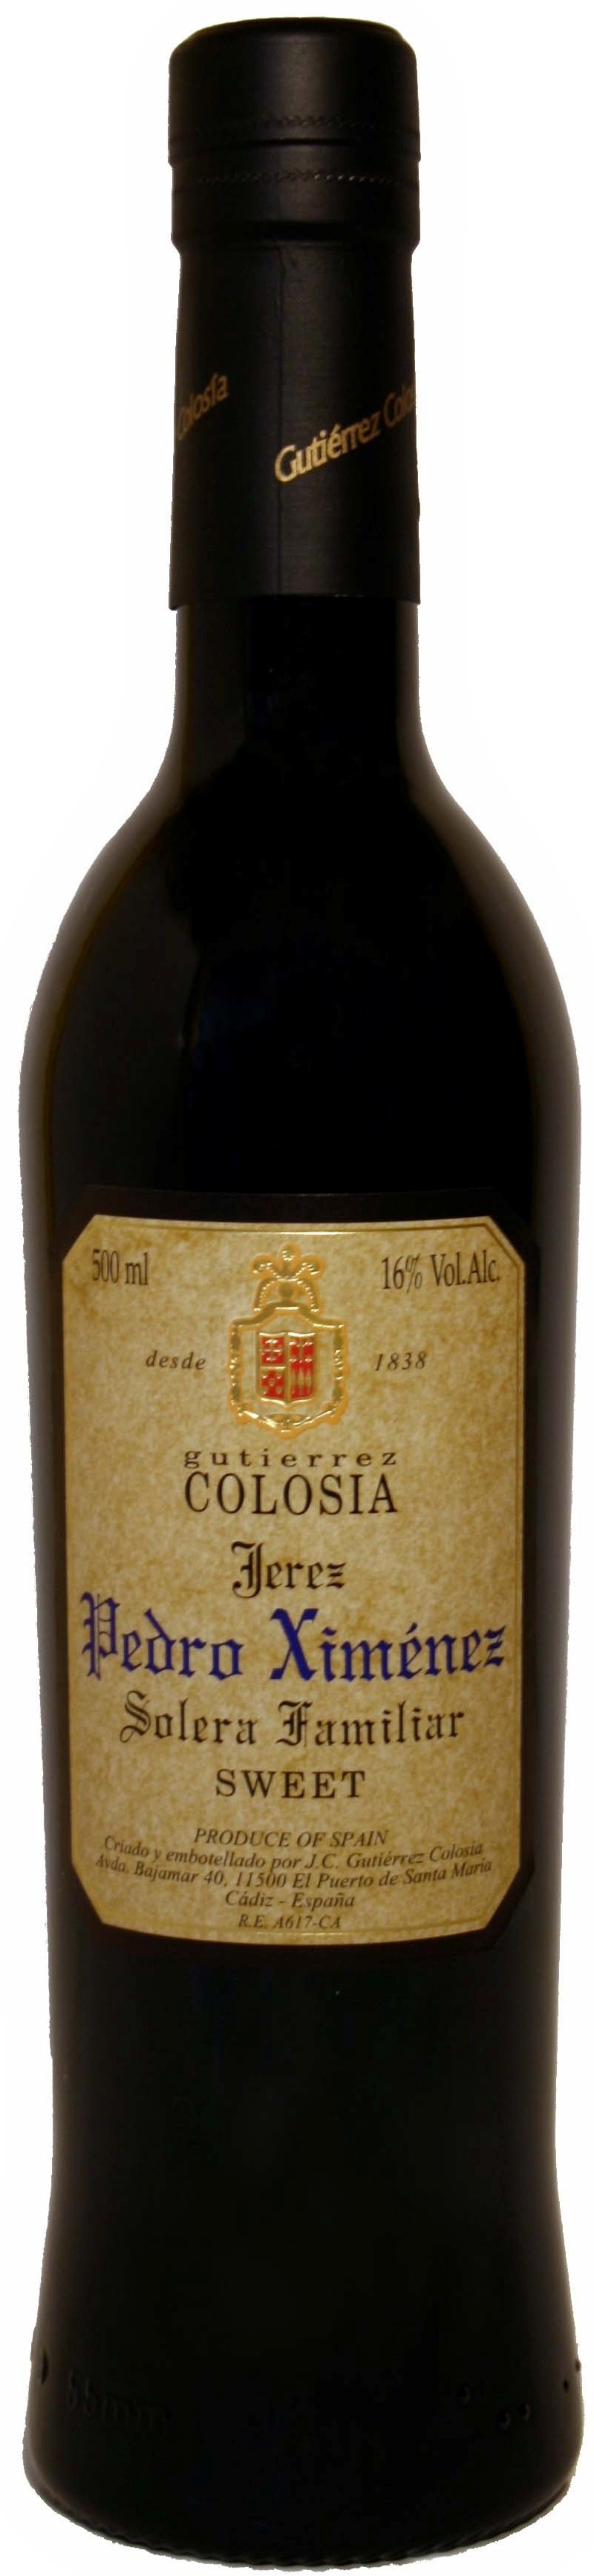 Logo Wine Colosía Solera Familiar Pedro Ximénez